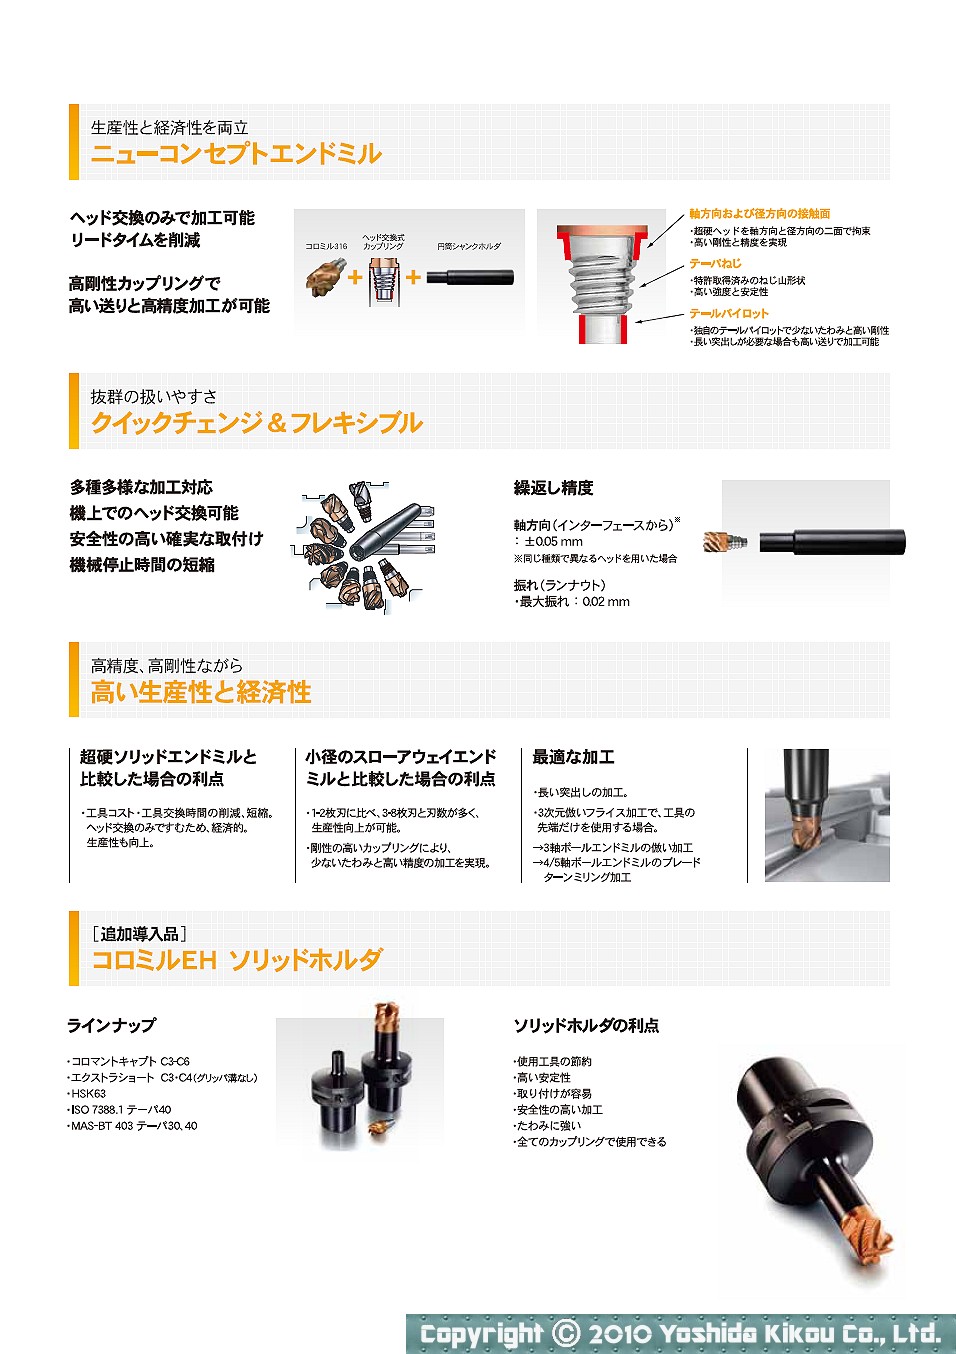 吉田機工株式会社 Yoshida Kikou Co.,Ltd.  ヘッド交換式エンドミル「コロミル316」